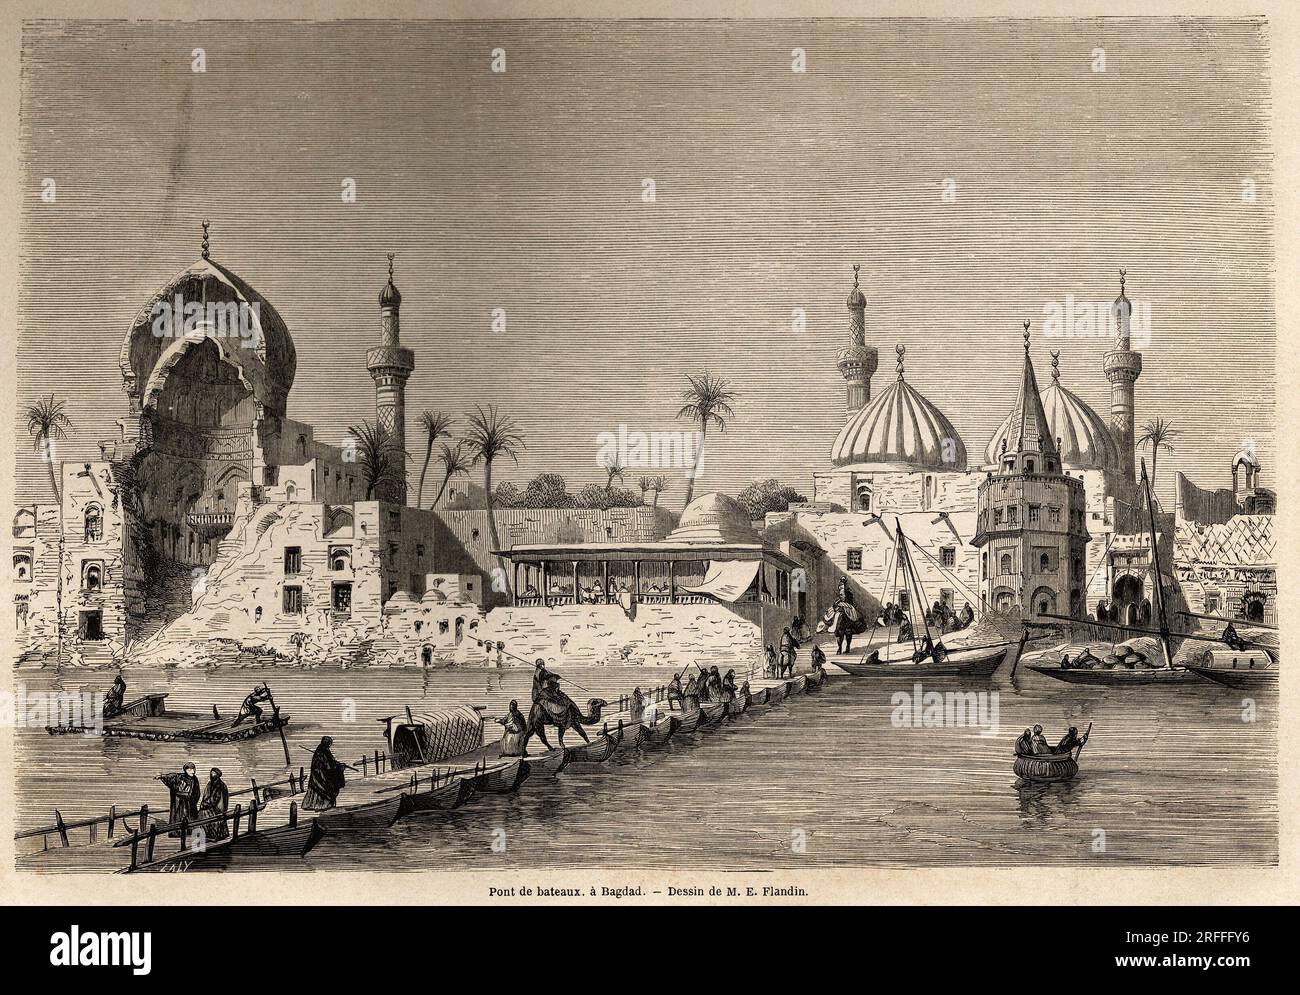 UN pont de Bateau, A Bagdad, dessin de Eugene Flandin (1809-1876), pour Illustrator son voyage en Mesopotamie, en 1840-1842. Gravure in „Le Tour du Monde“ 1861. Stockfoto